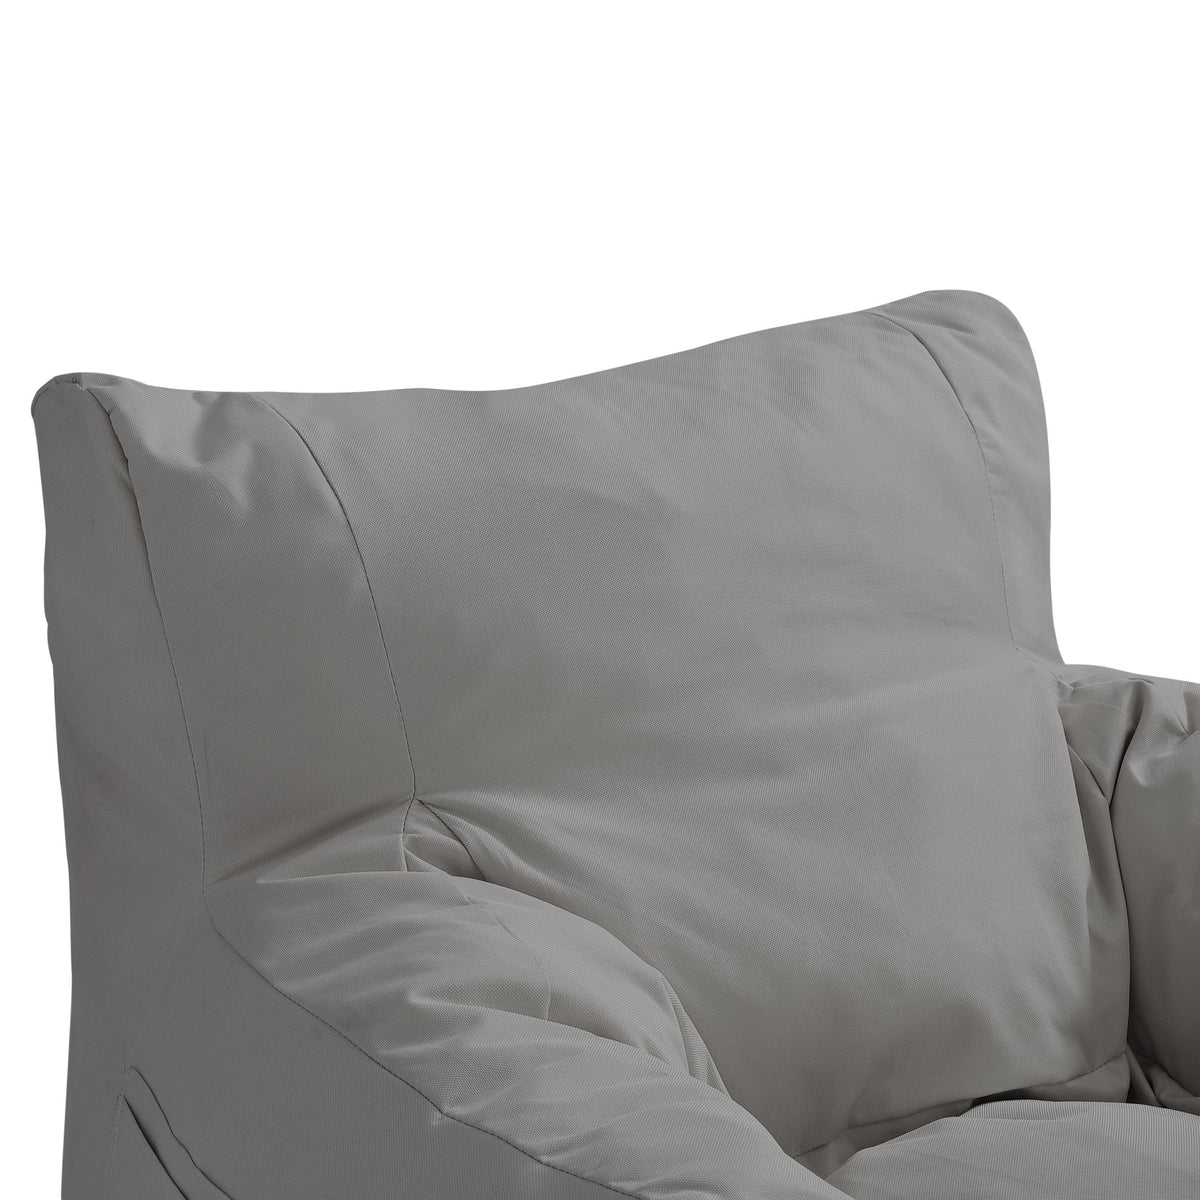 Loungie Nylon Bean Bag Chair Indoor/Outdoor Water Resistant